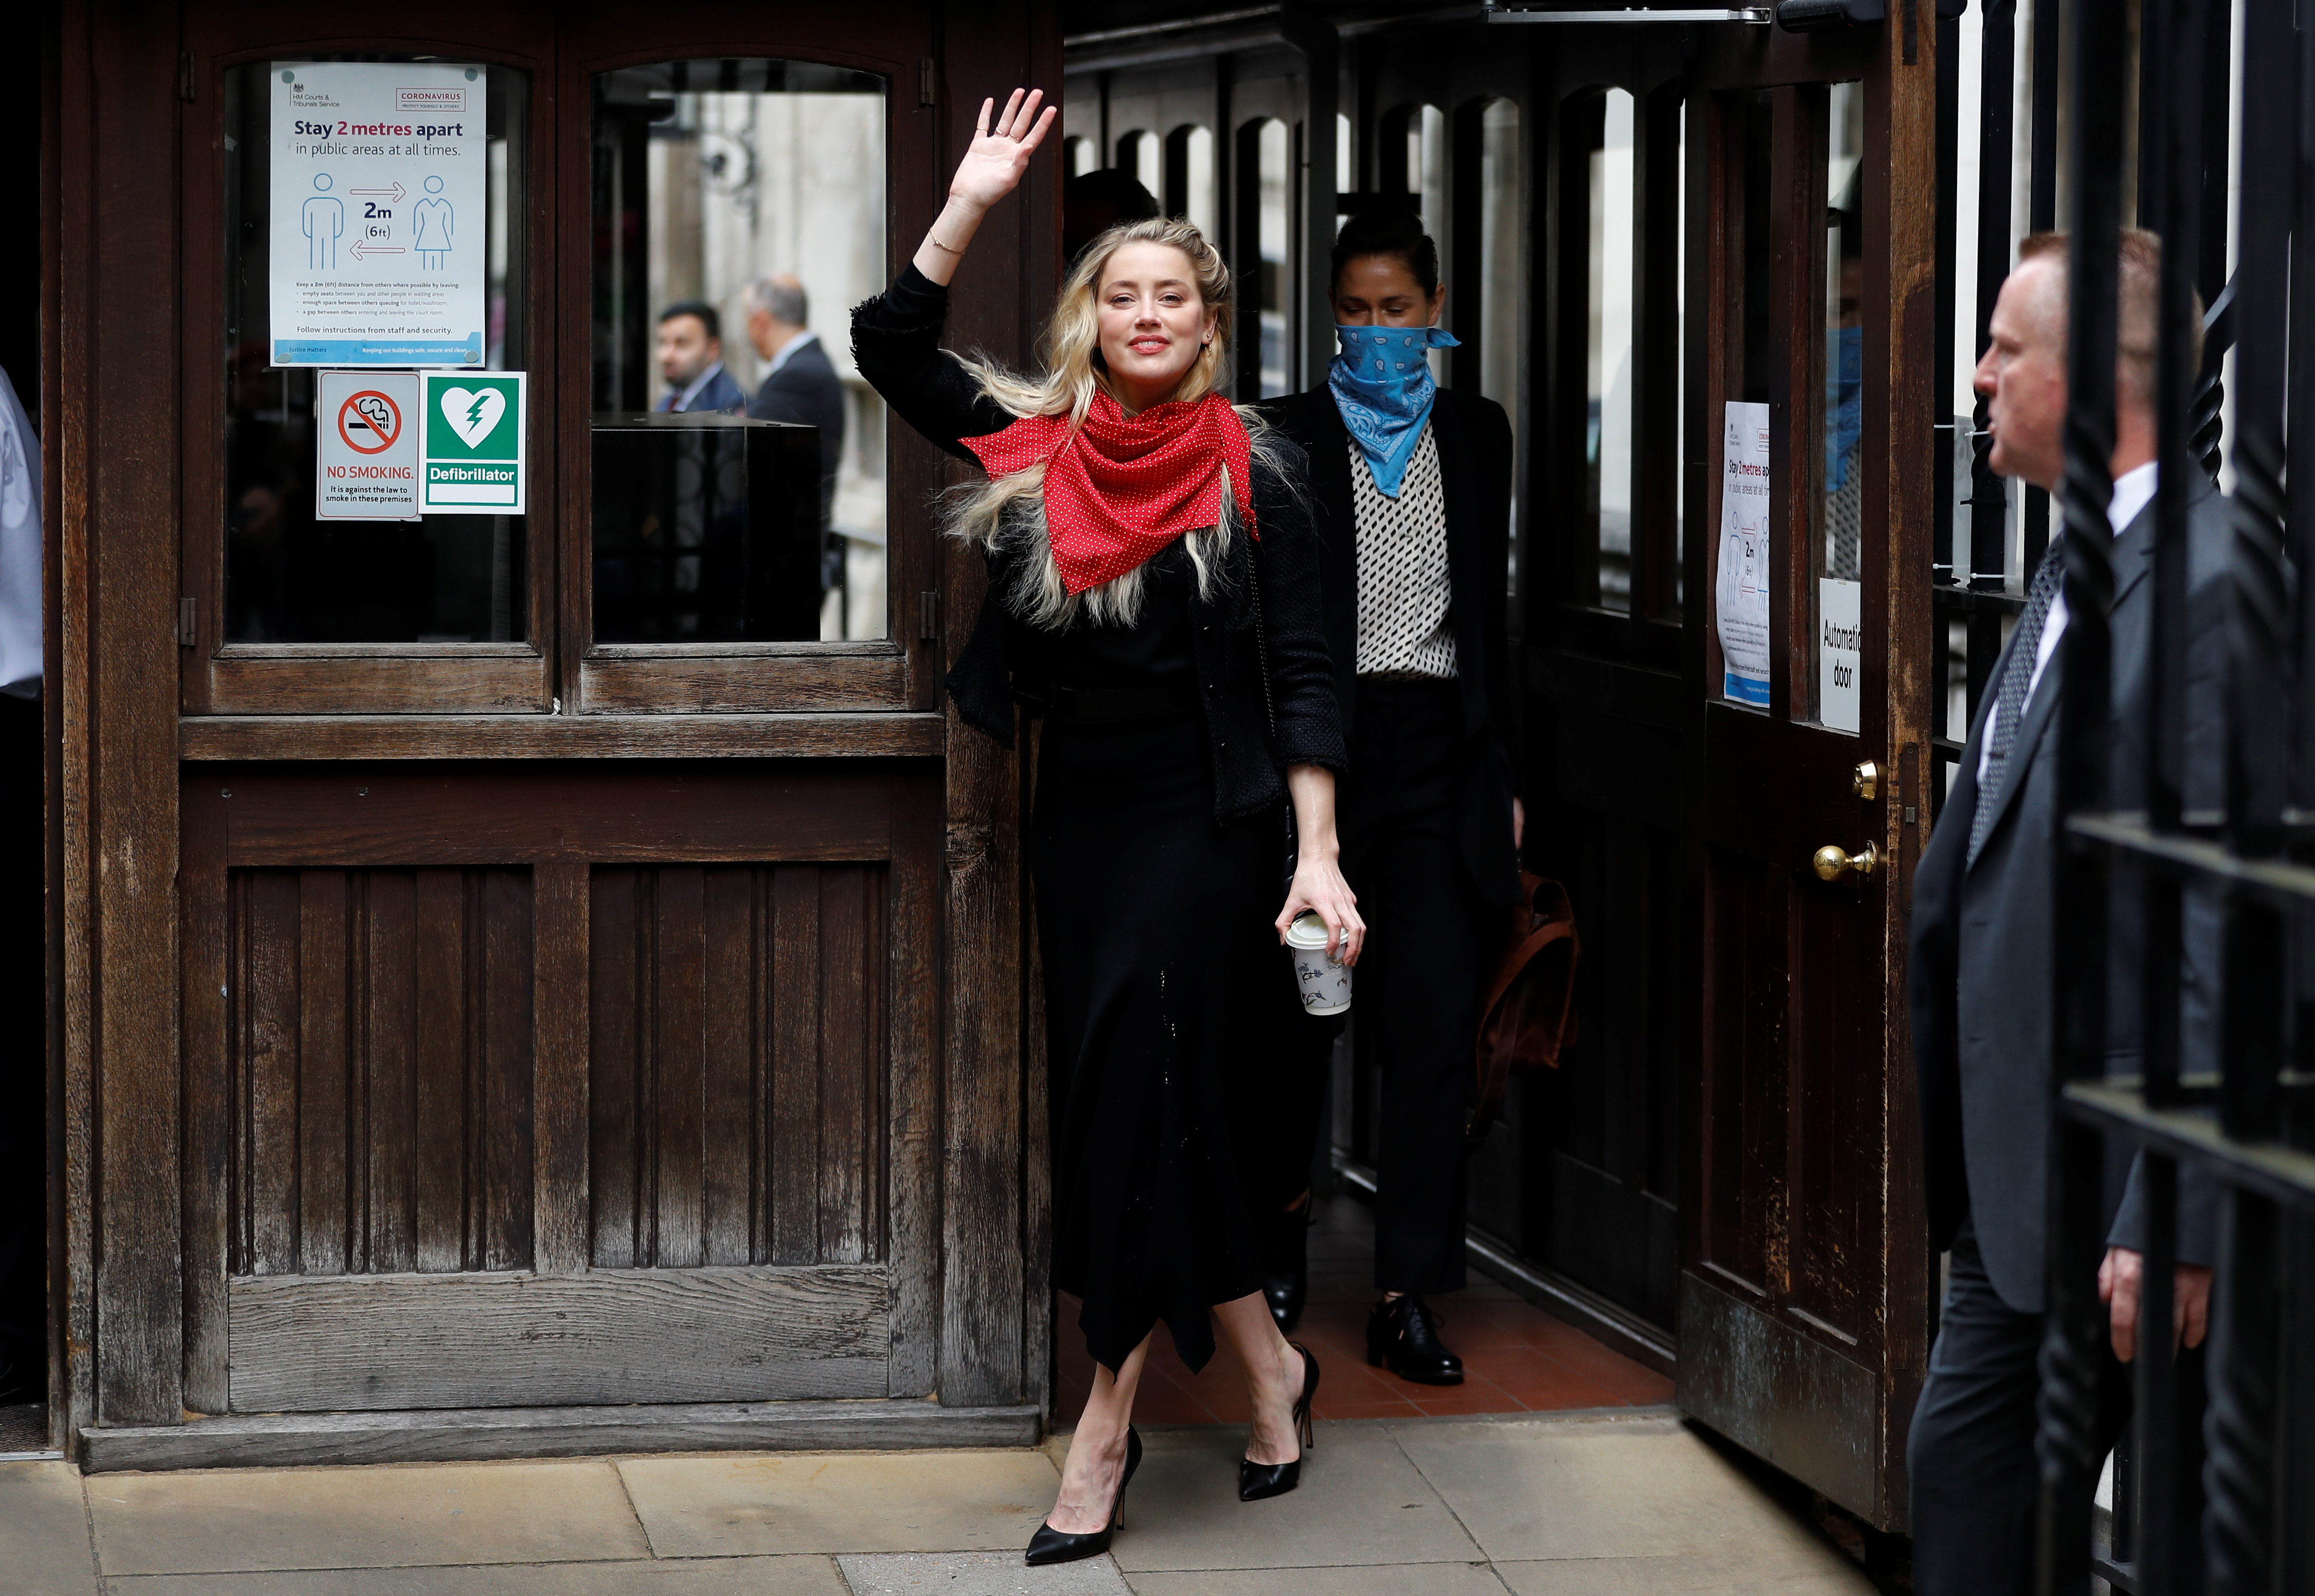 La actriz Amber Heard a su llegada a la corte en Londres este jueves 23 de julio Foto: REUTERS/Peter Nicholls